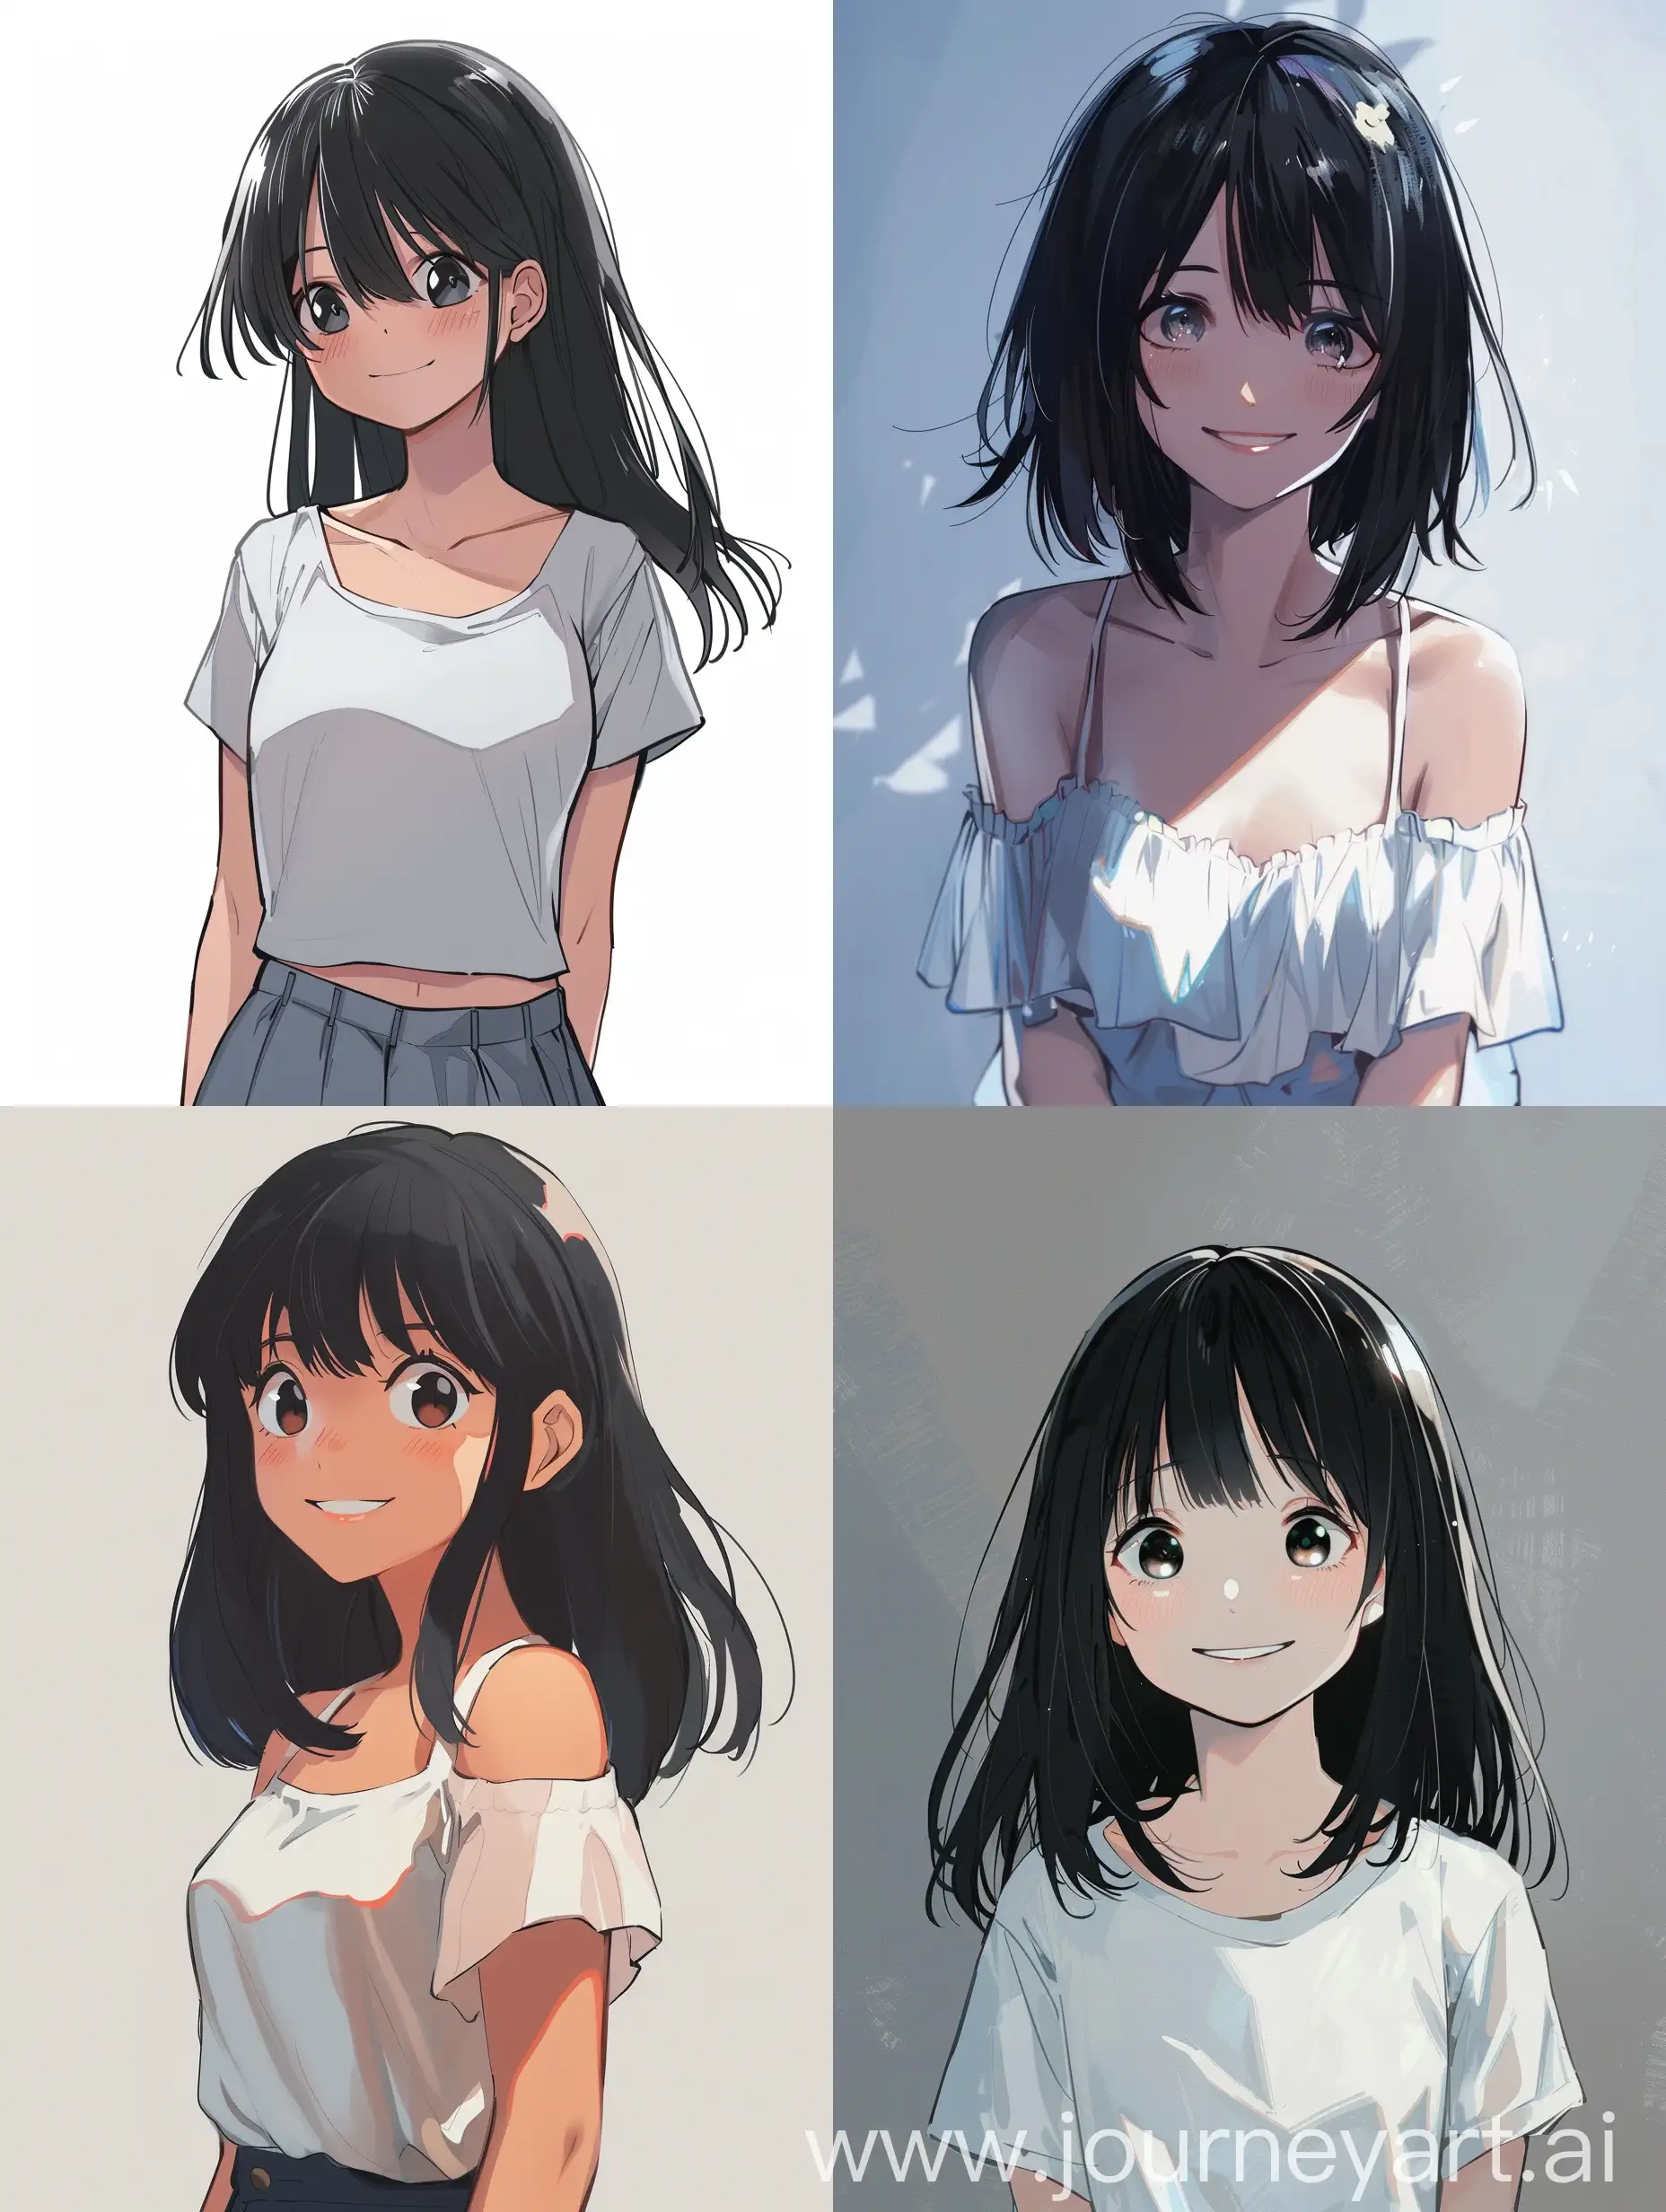 Девушка,в аниме стиле,стоит в полный рост,черные волосы по плечи,улыбается